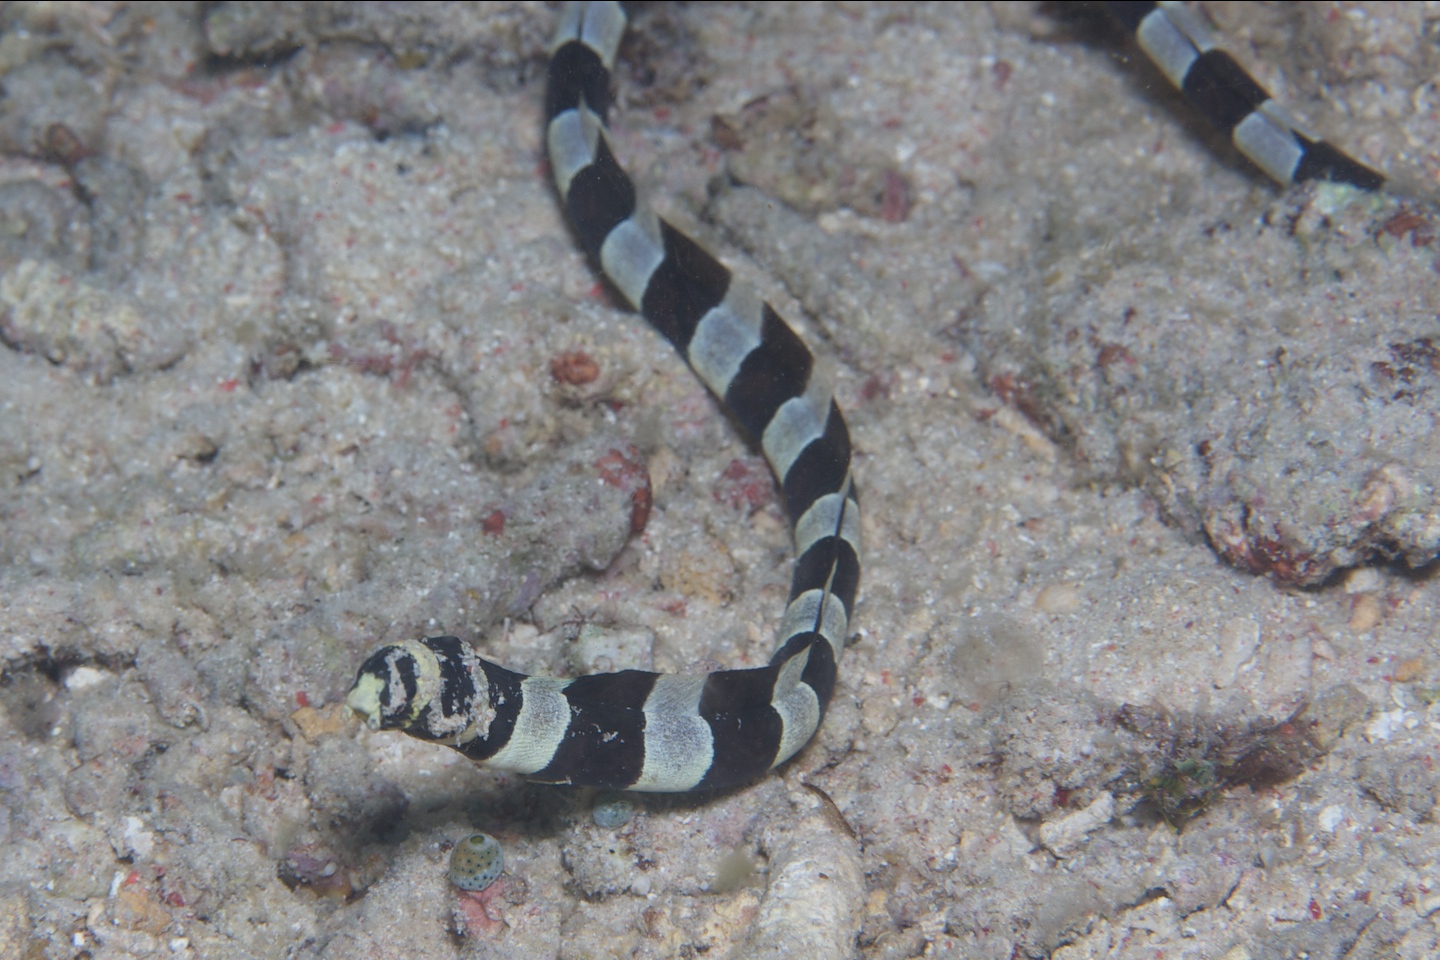 Banded snake eel